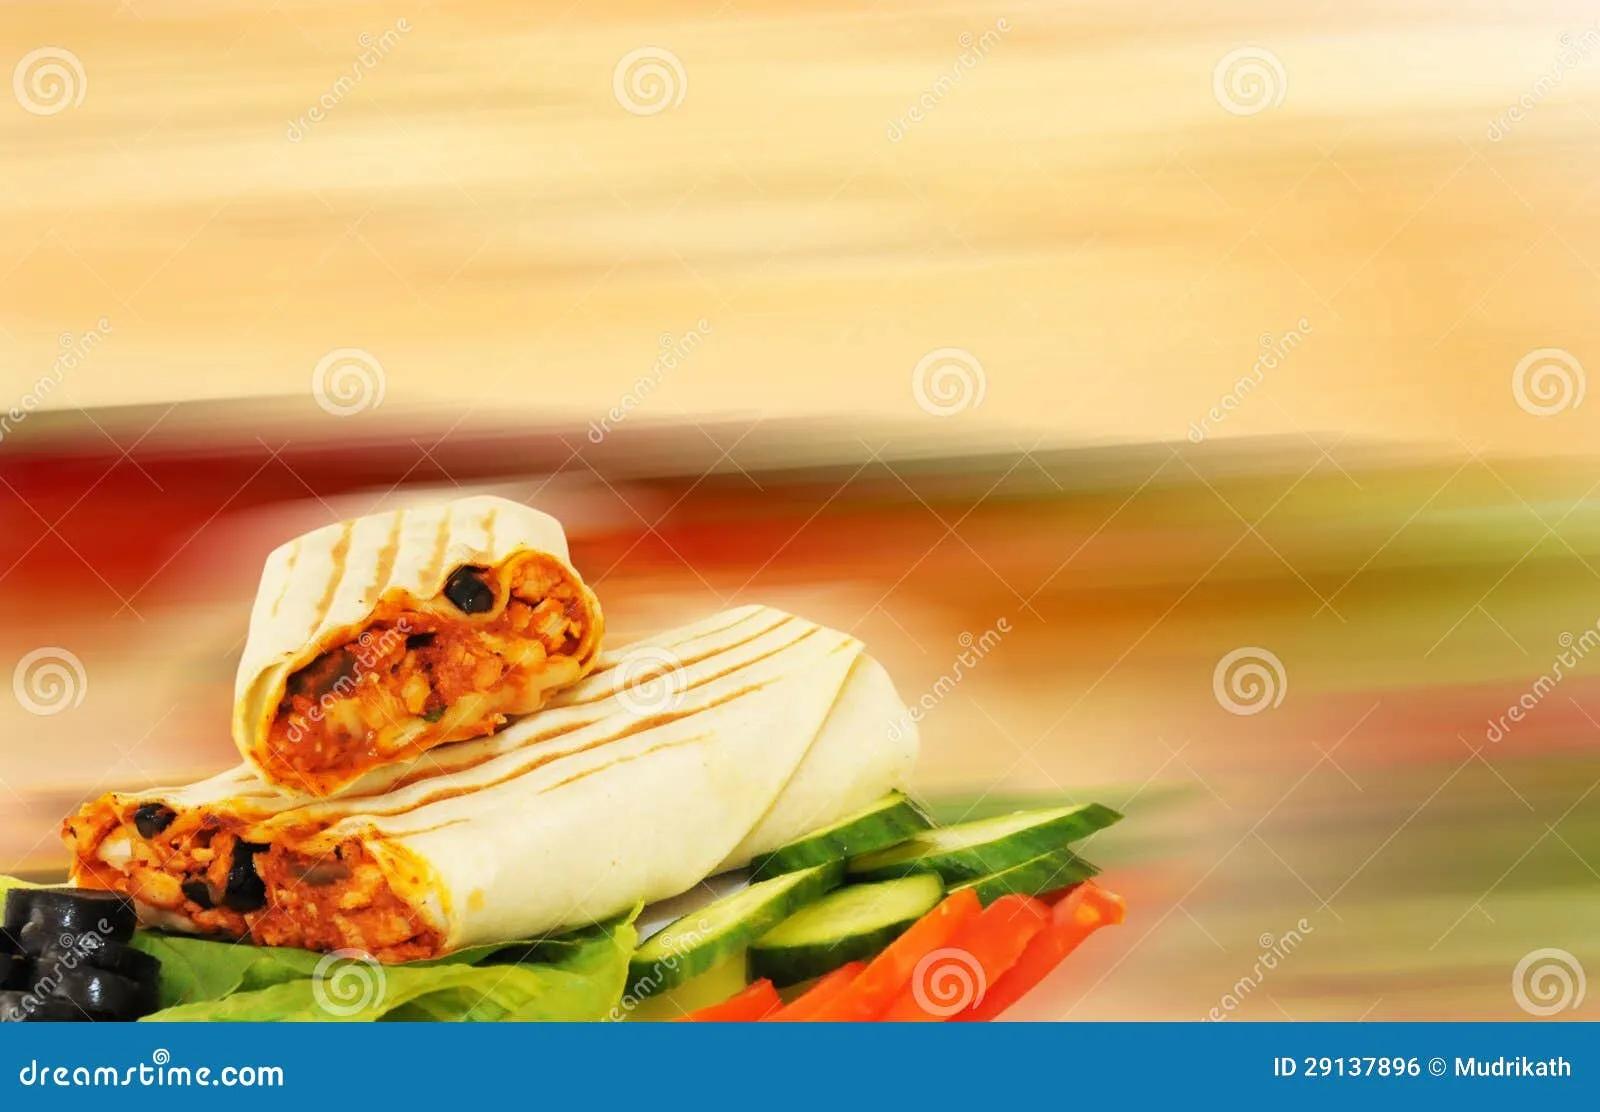 Arabisches Sandwich stockfoto. Bild von bankett, kulinarisch - 29137896